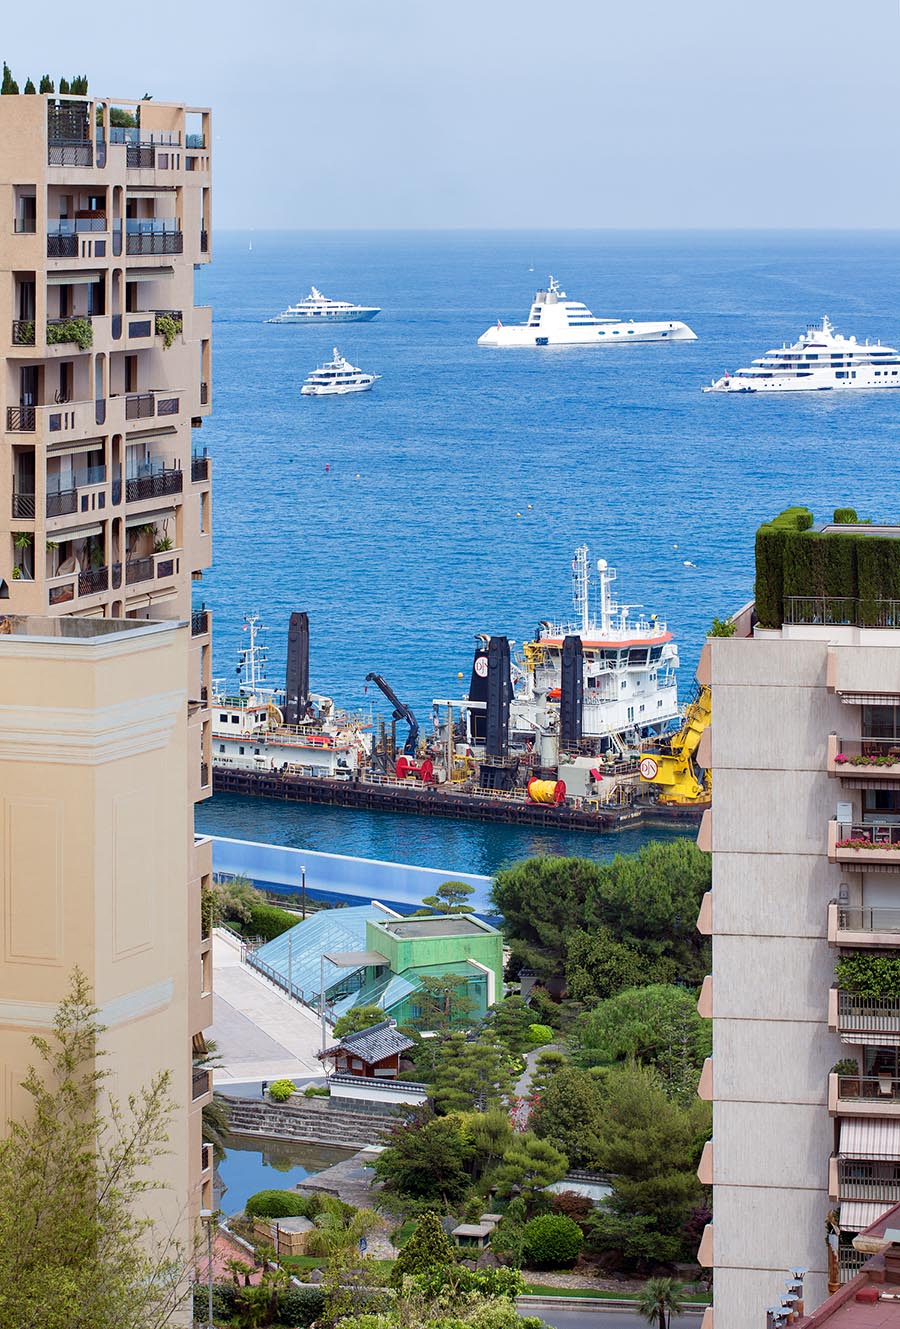 Lavori d’espansione sul mare al Larvotto , Principato di Monaco